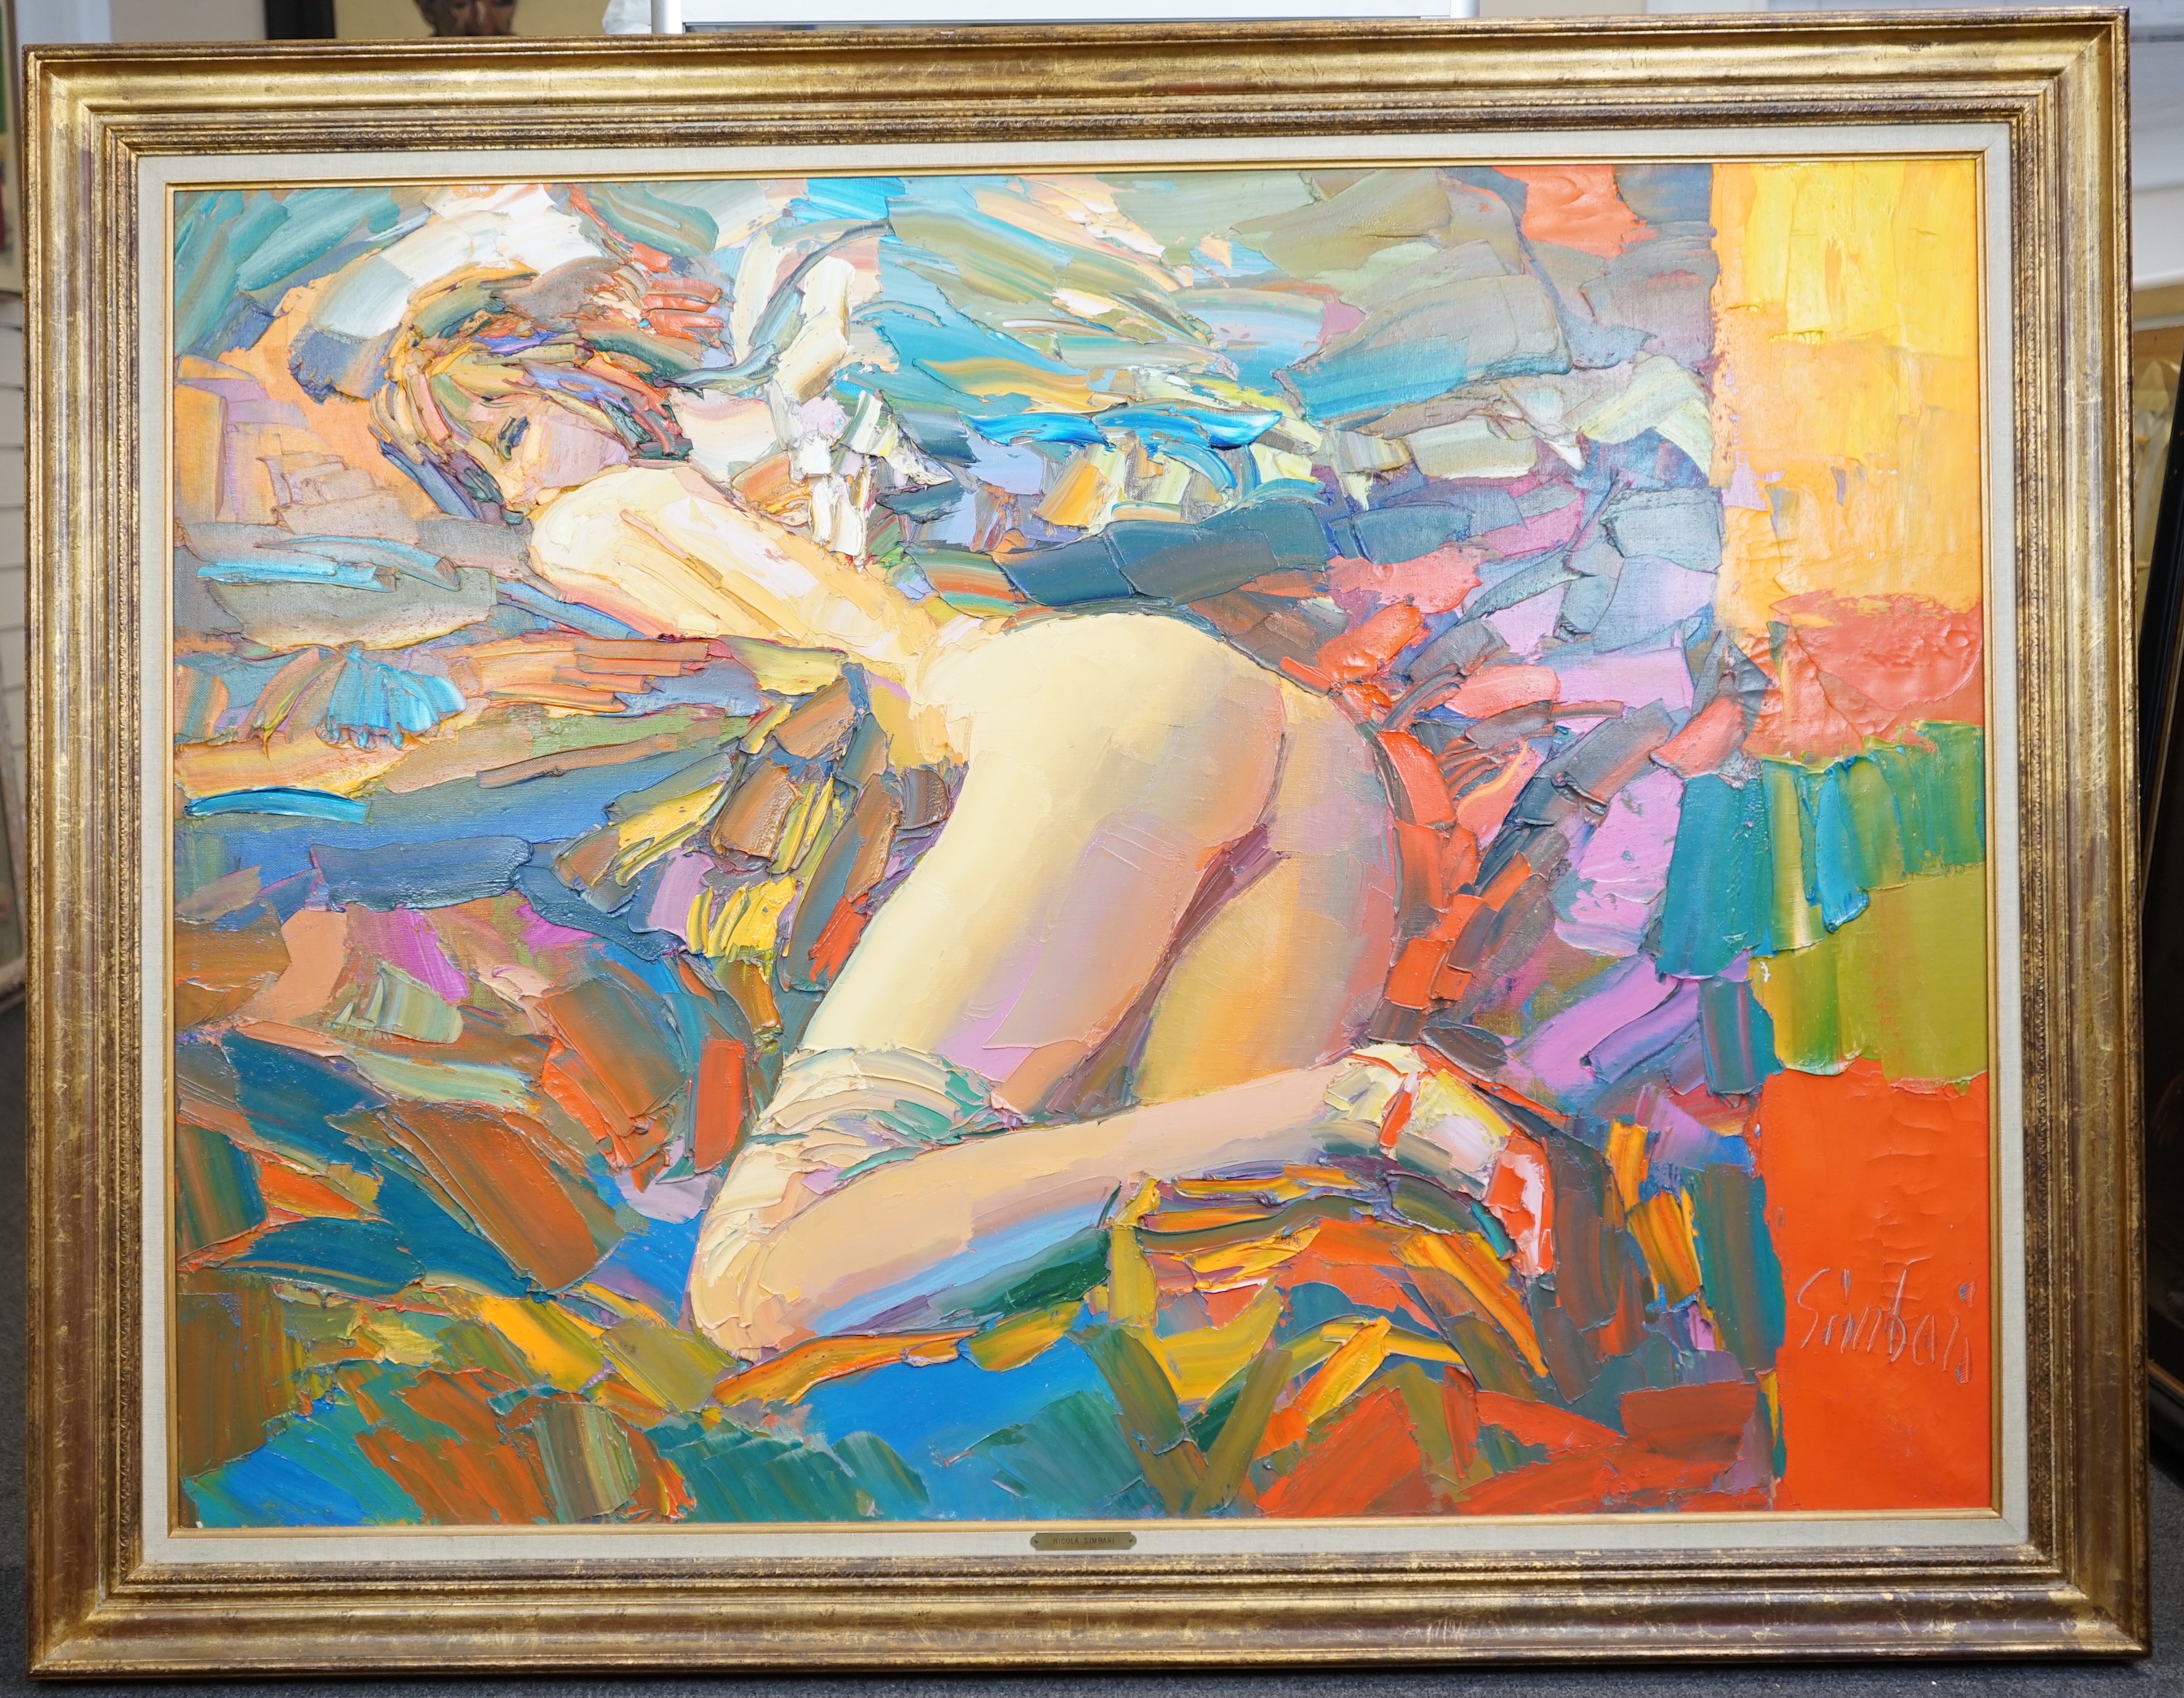 Nicola Simbari (Italian, 1927-2012), 'Pagazza Che Dorme', oil on canvas, 96 x 129cm